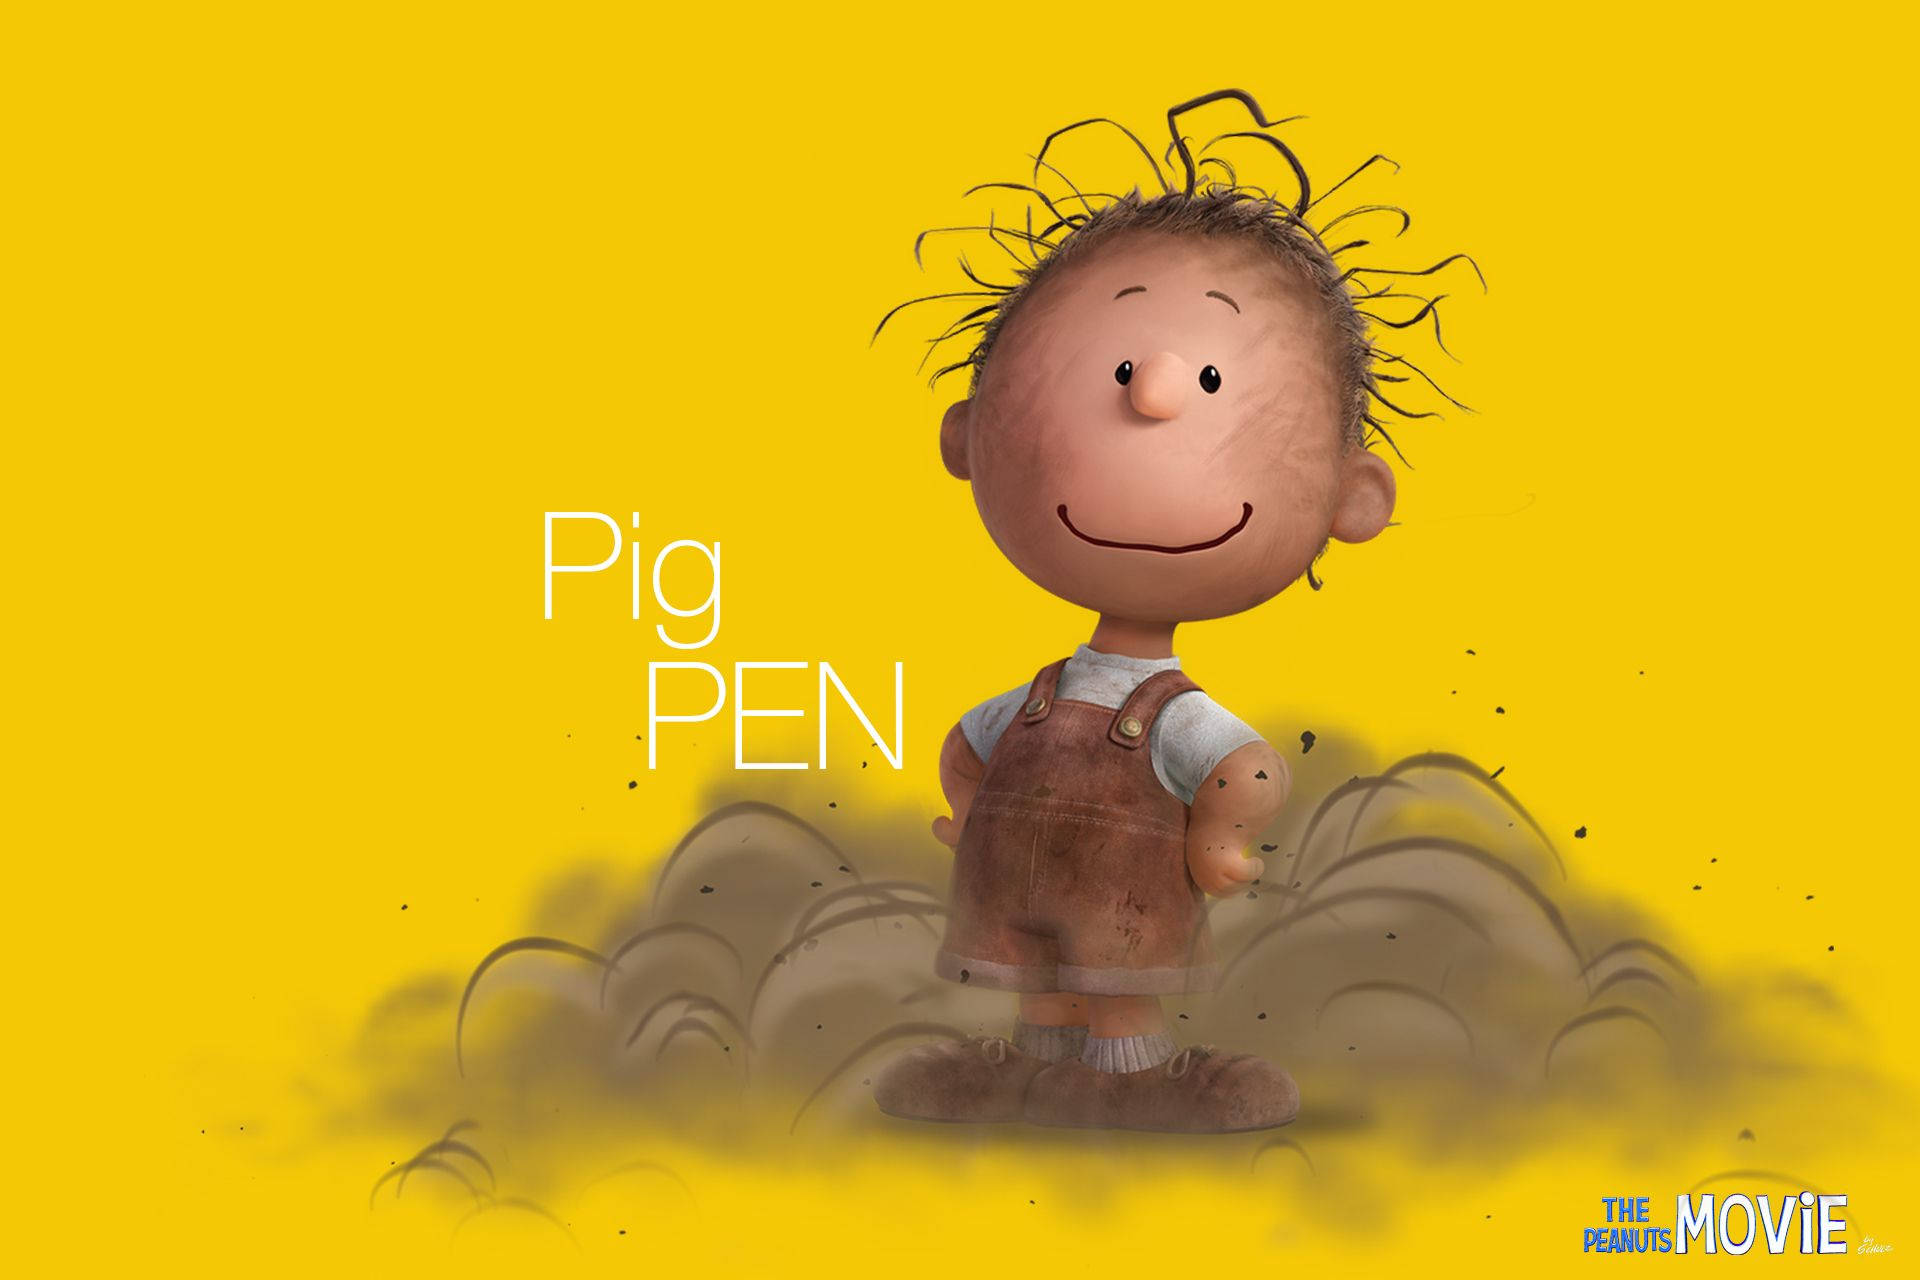 Pig-Pen From Peanuts Movie Wallpaper